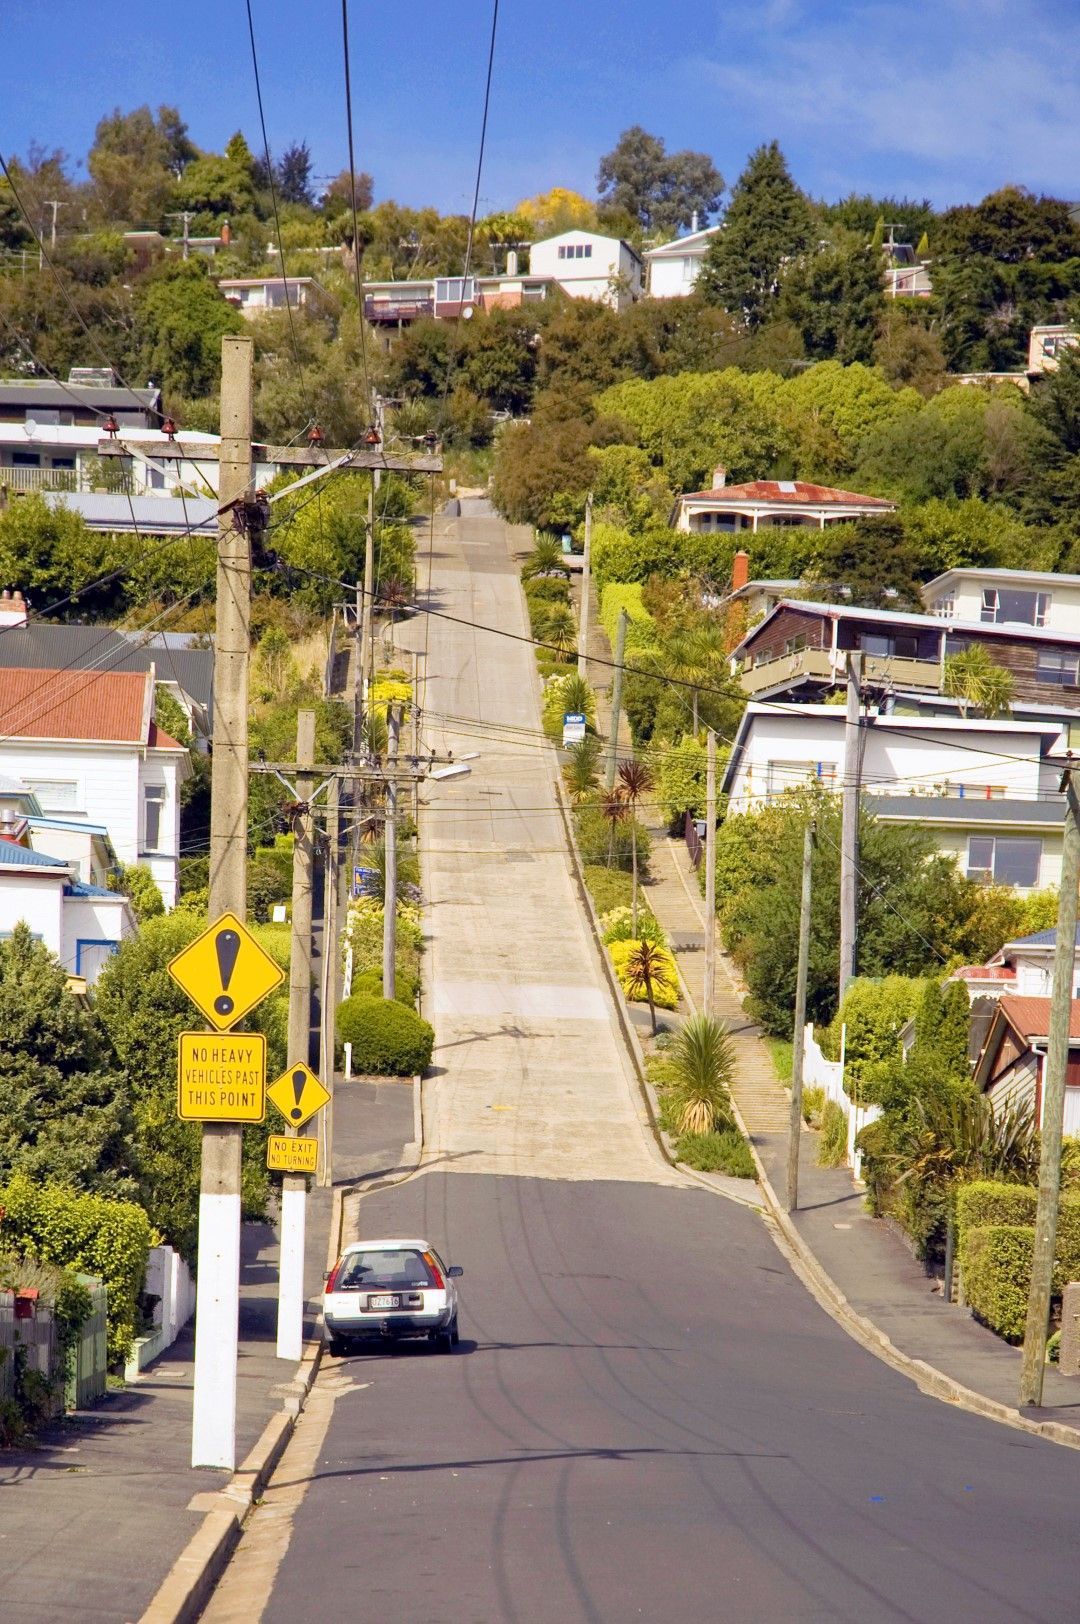 Улица "Болдуин" в град Дънидин, Нова Зеландия